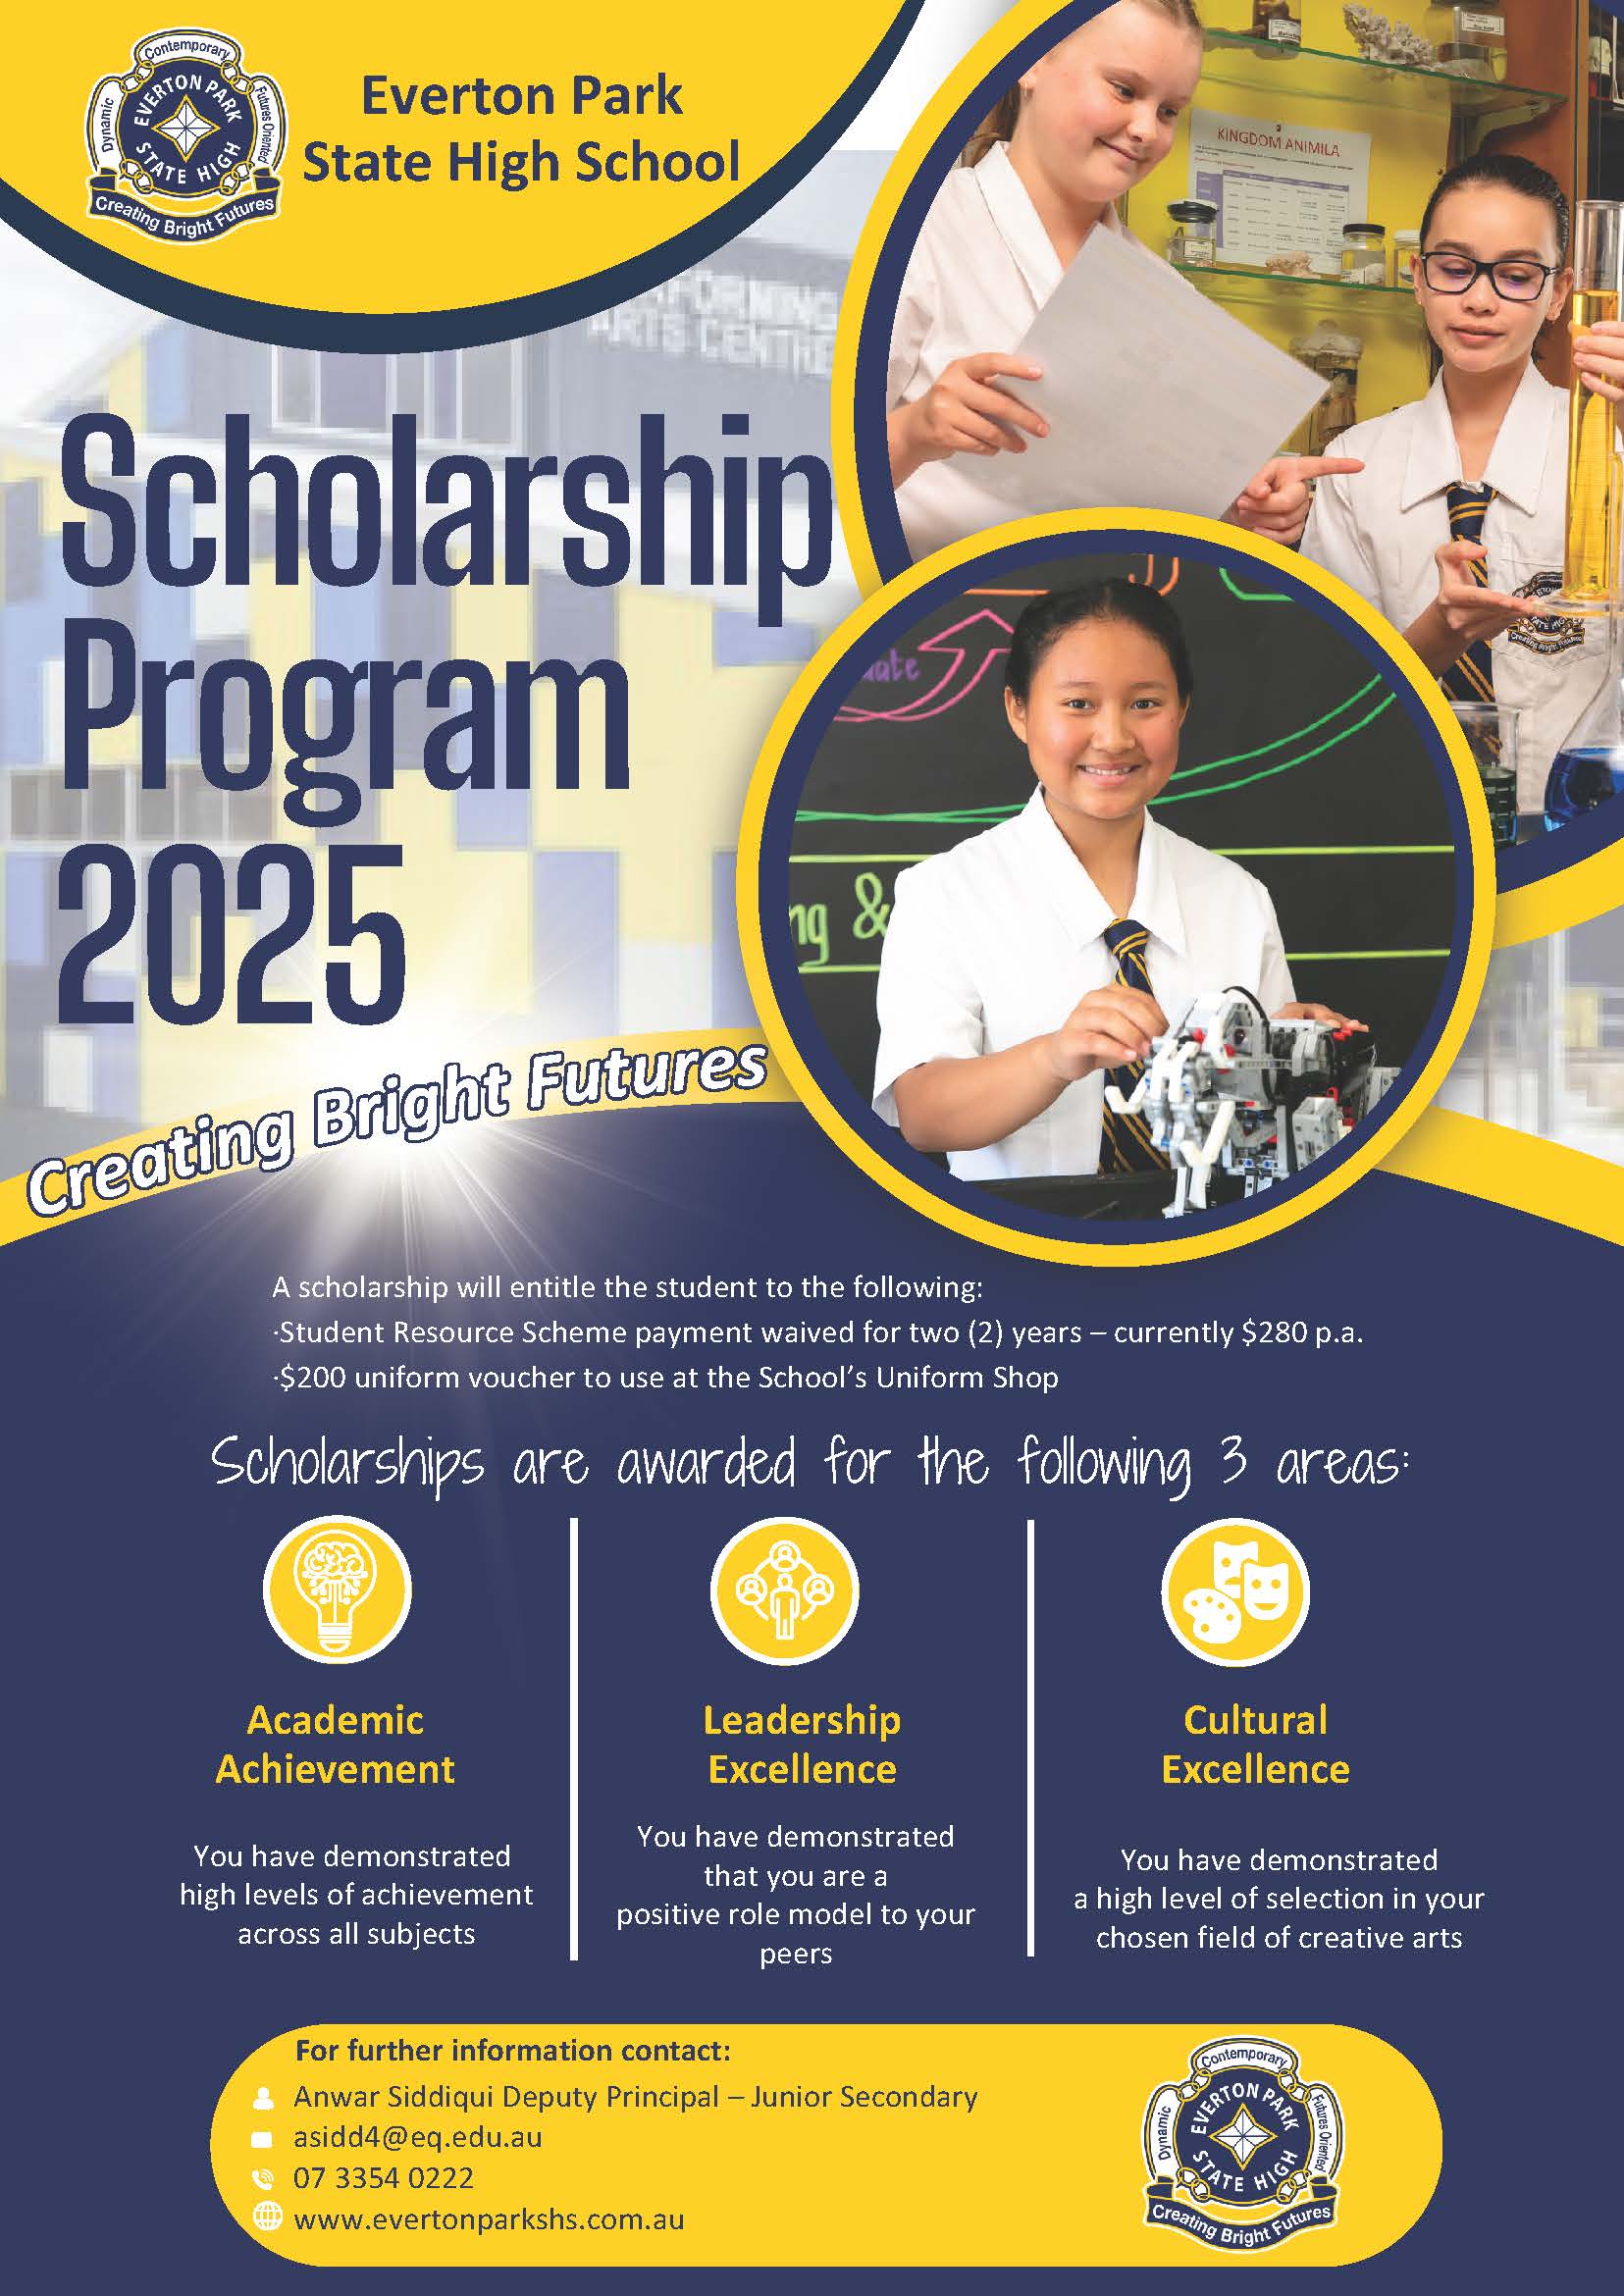 Scholarships Program 2025 Flyer _.jpg